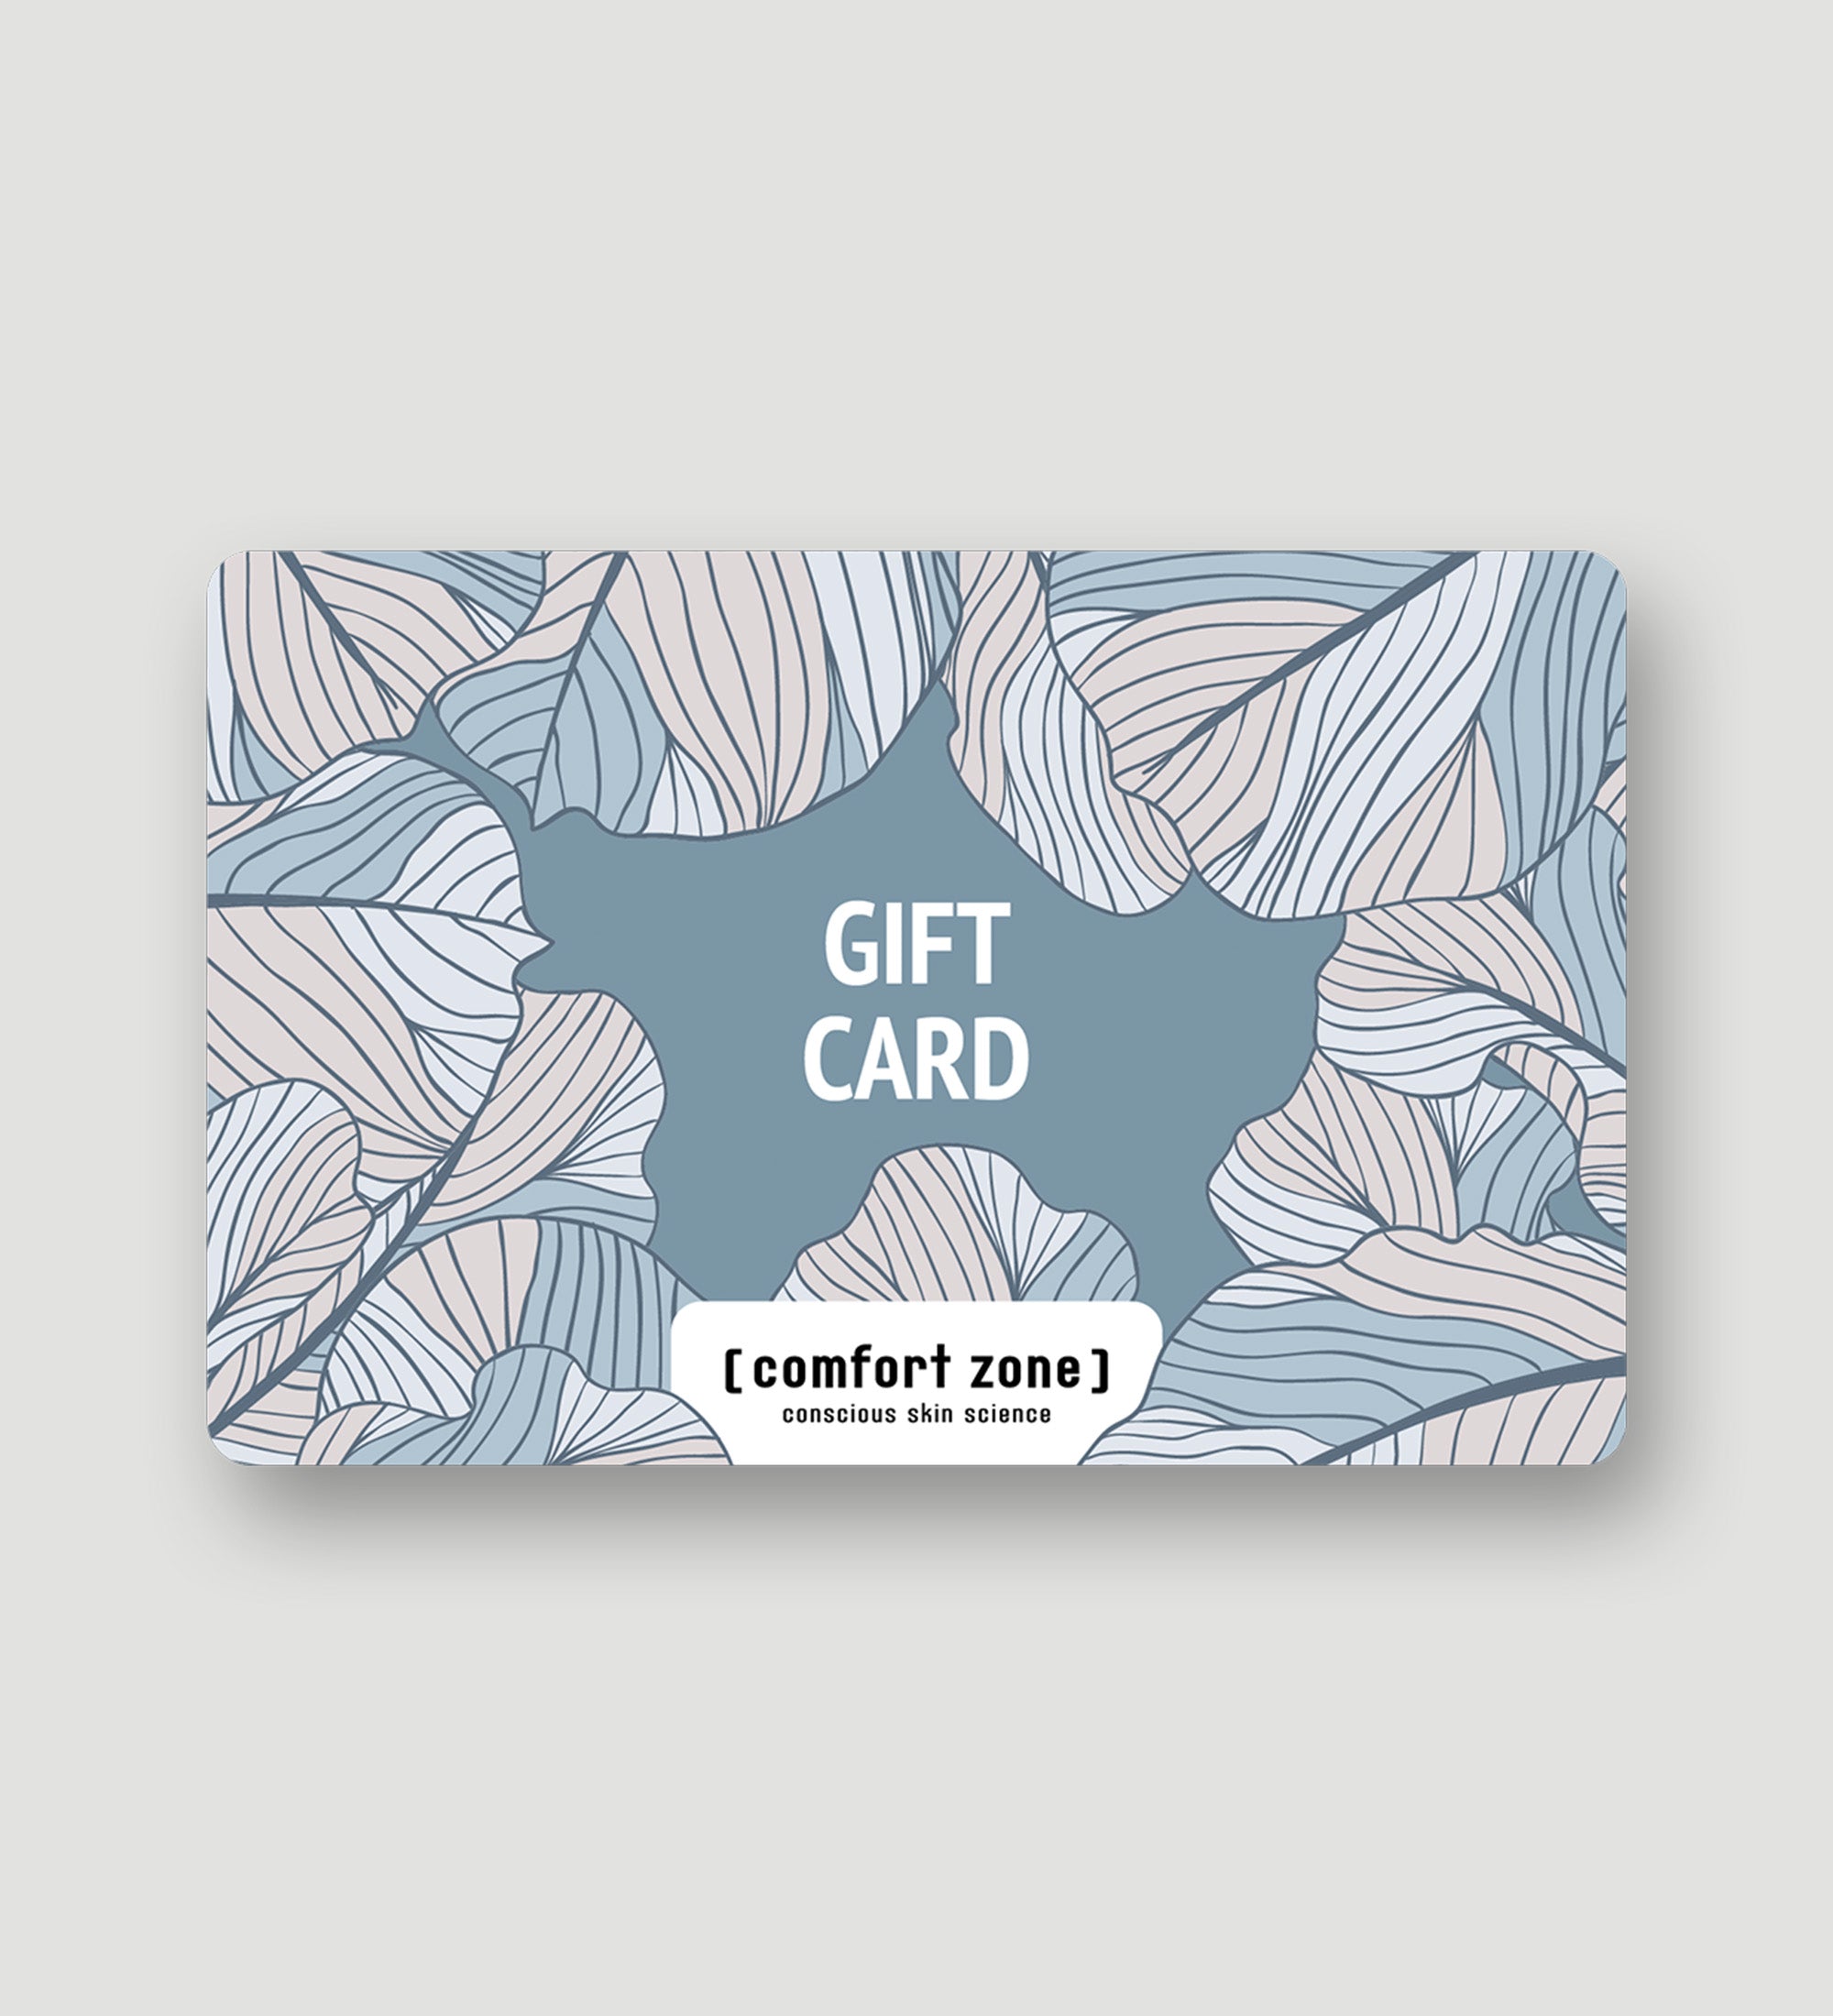 : gift_card E-GIFT CARD <span>Du möchtest eine strahlende Haut verschenken, weißt aber nicht, welches Produkt du wählen sollst? Mit einem Geschenkgutschein für Hautpflege kannst du sicher sein, dass du ein Geschenk gibst, das dich nie enttäuschen wird! Unsere E-Gift Card ist die perfekte Geschenkidee selbst für die schwierigste Person, für die man einkaufen muss! Gib einfach den Wert ein und lass einen Freund oder ein Familienmitglied in den Genuss kommen, das richtige Produkt auszuwählen und sich um seinen Hauttyp zu kümmern.</span>-
